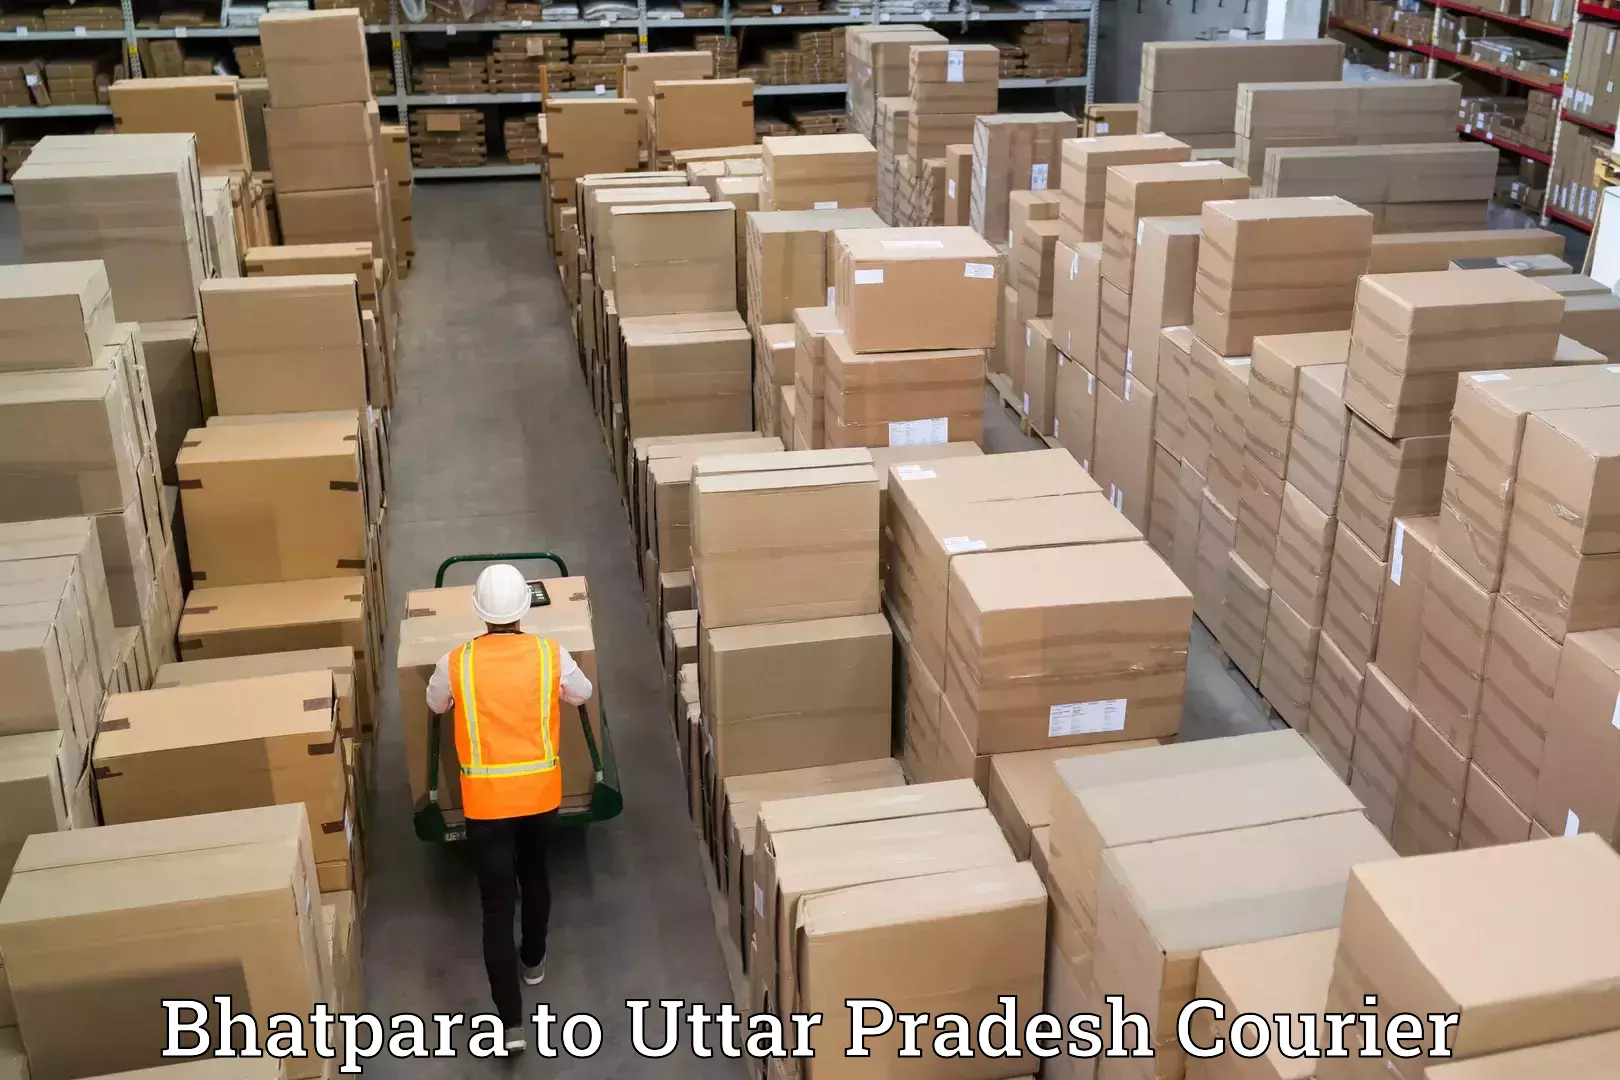 Furniture transport services in Bhatpara to Mungra Badshahpur